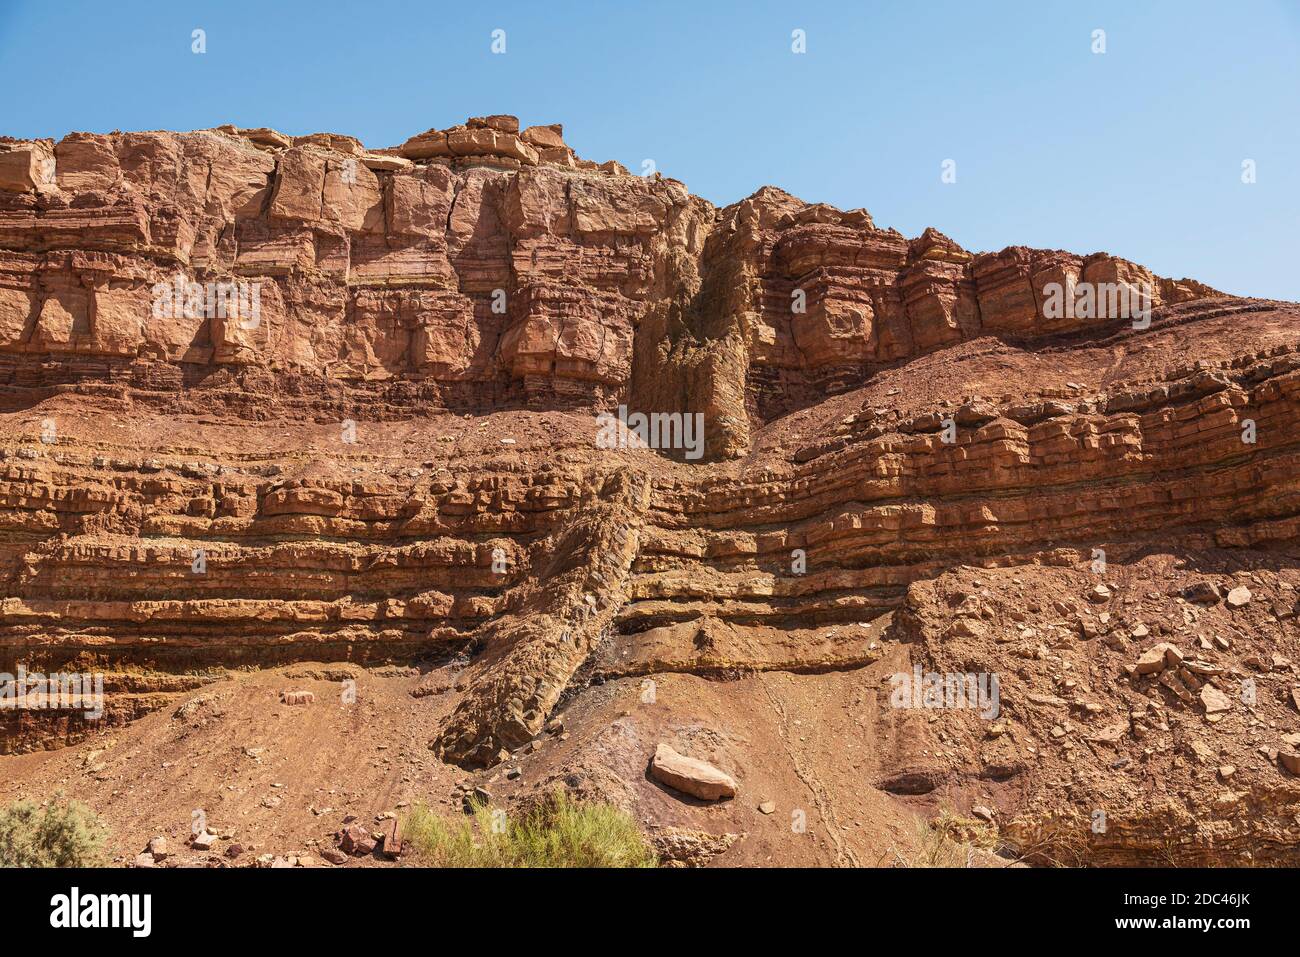 une digue ignée magmatique diagonale traverse le rouge et l'orange Couches horizontales de calcaire dans nahal Ardon dans le Makhtesh Ramon cratère en Israël Banque D'Images